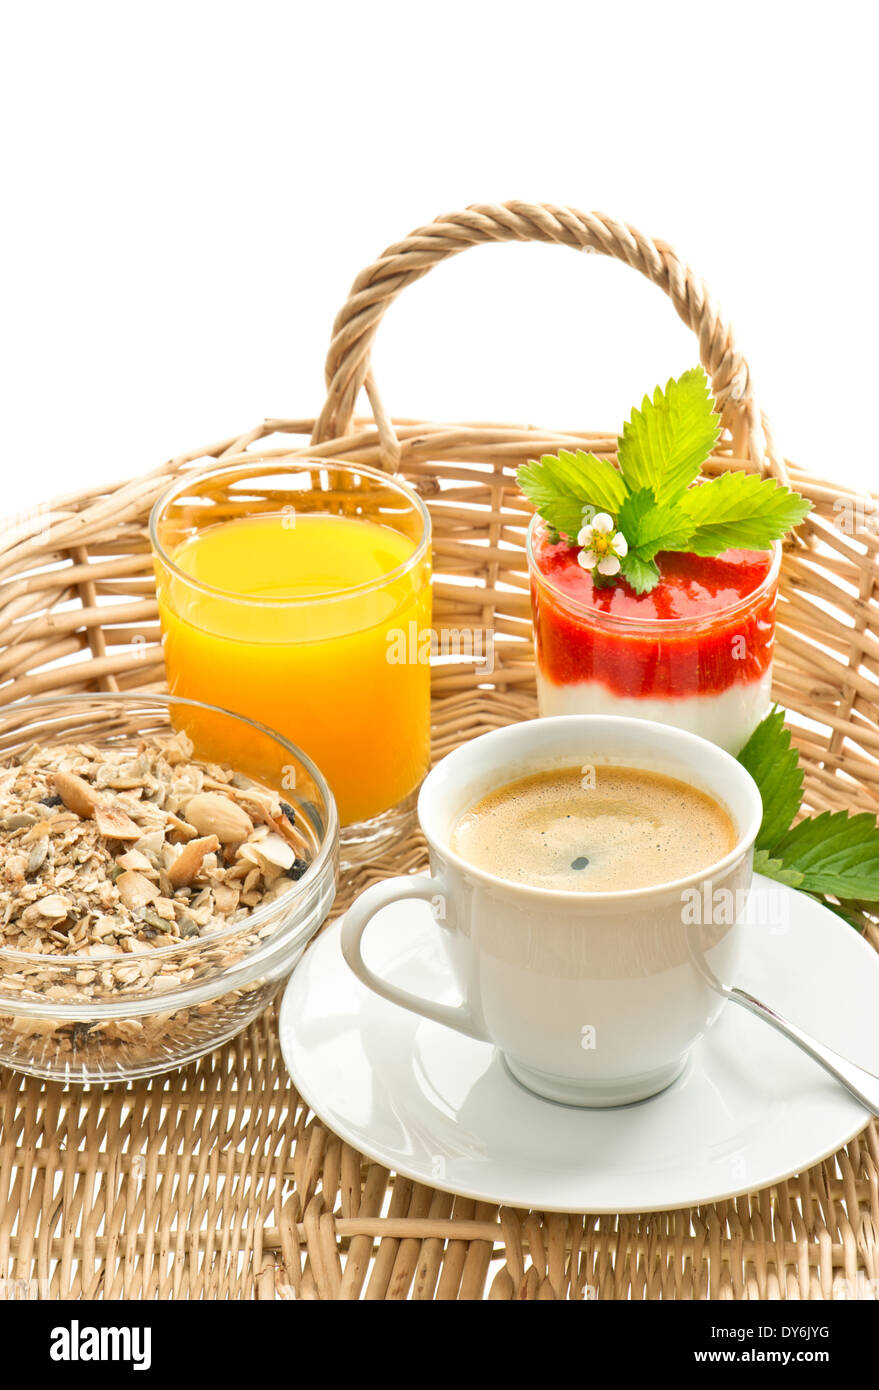 La prima colazione con caffè, succo d'arancia e fresco di yogurt alla fragola Foto Stock